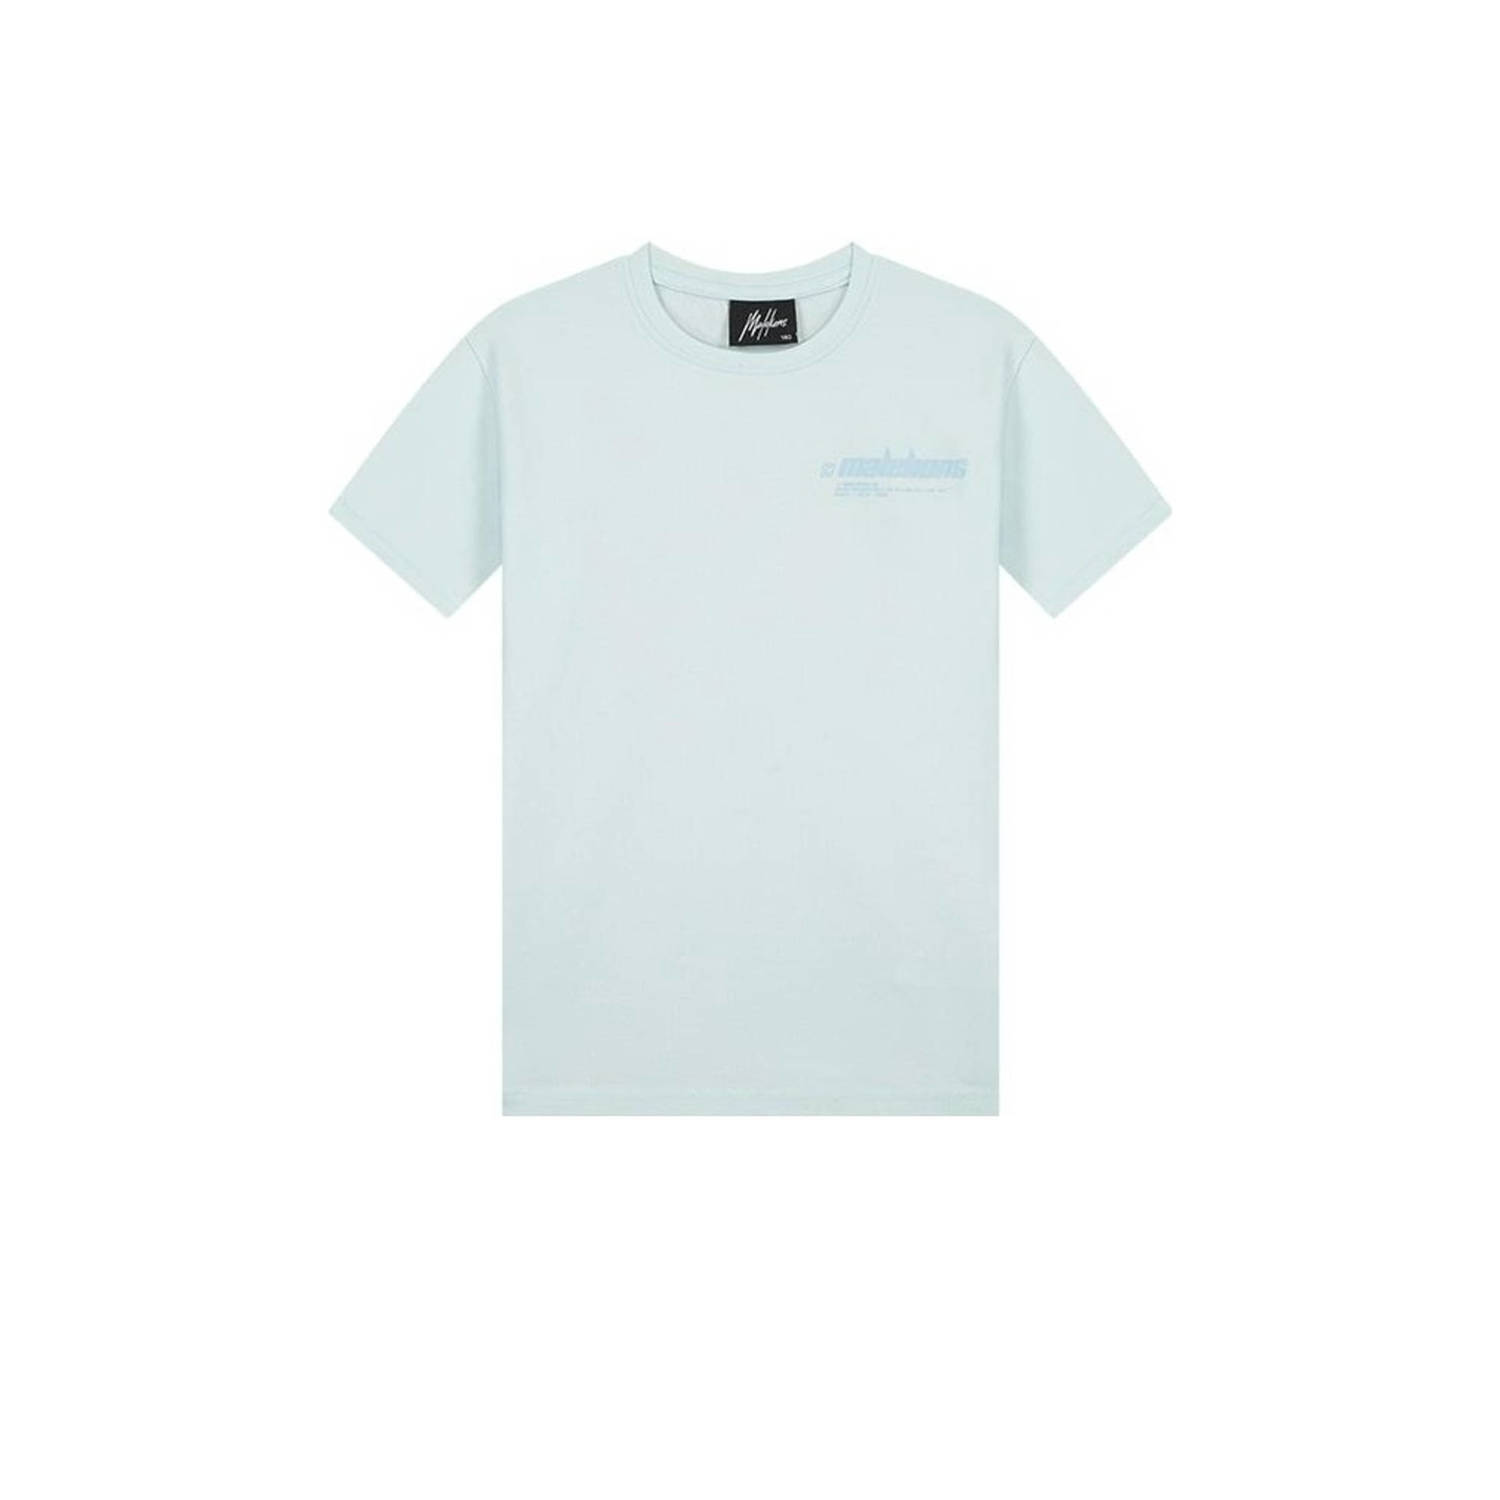 Malelions T-shirt Worldwide met logo blauw Jongens Stretchkatoen Ronde hals 164